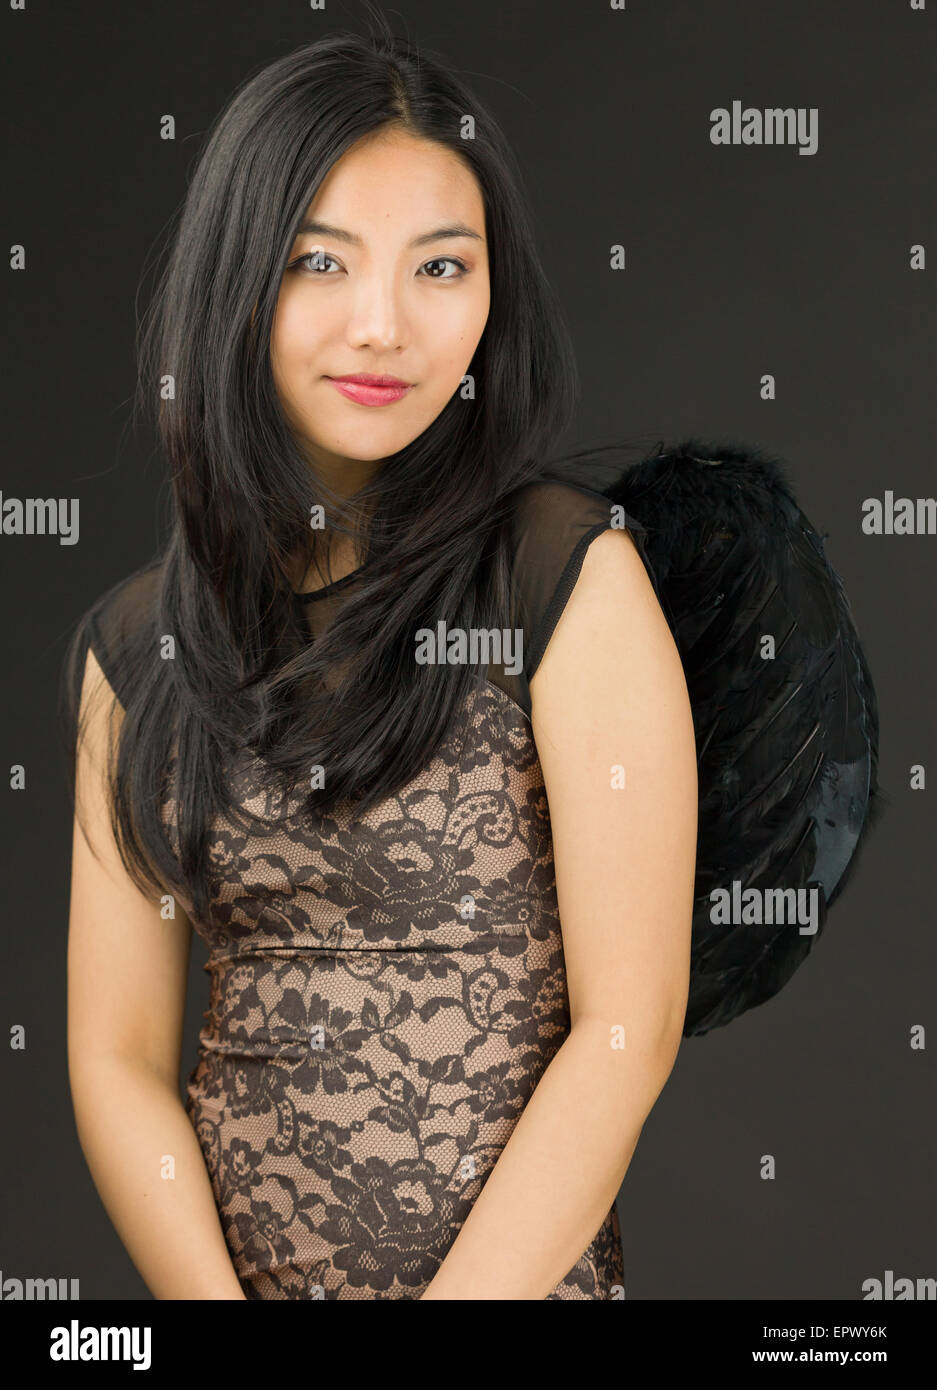 Atractiva mujer adulta joven asiática en los ángeles y demonios Foto de stock